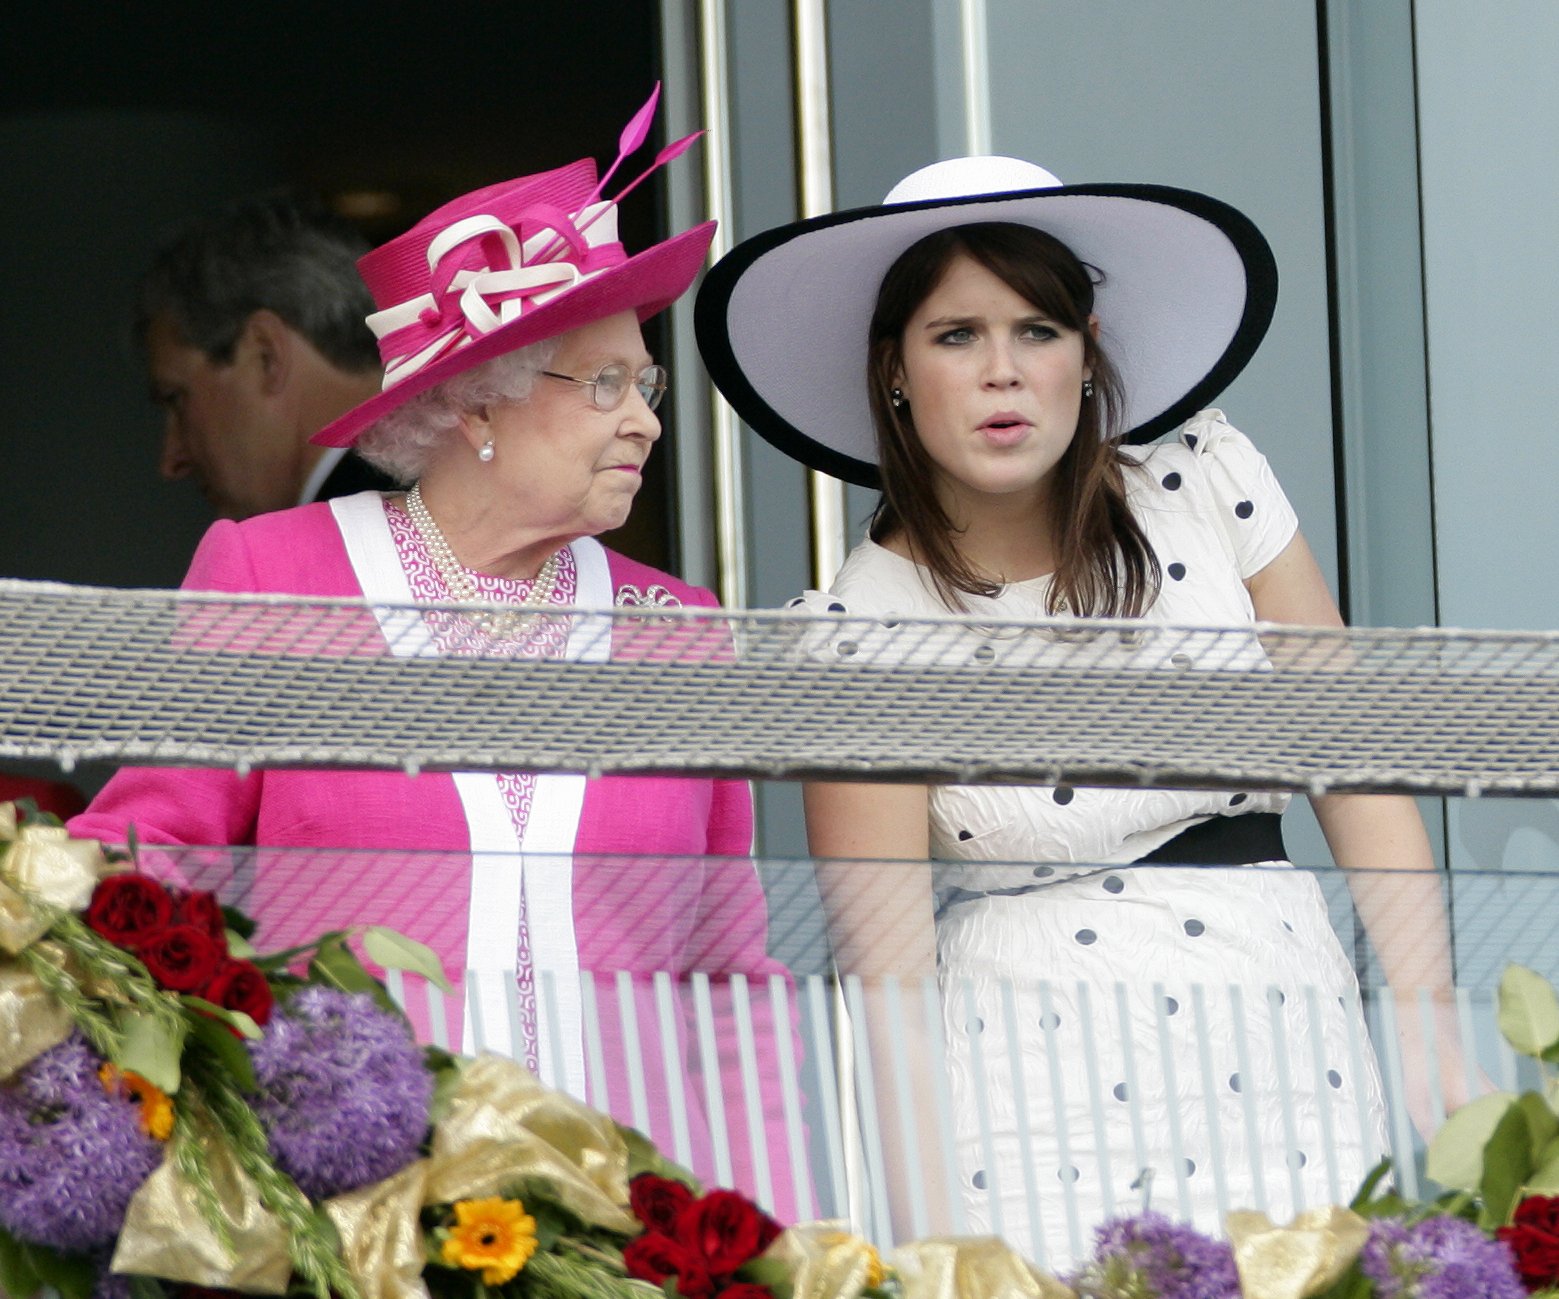 Königin Elizabeth II. und Prinzessin Eugenie auf dem Balkon der Königsloge bei der Teilnahme am Derby Day beim Investec Derby Festival am 4. Juni 2011 in Epsom, England | Quelle: Getty Images